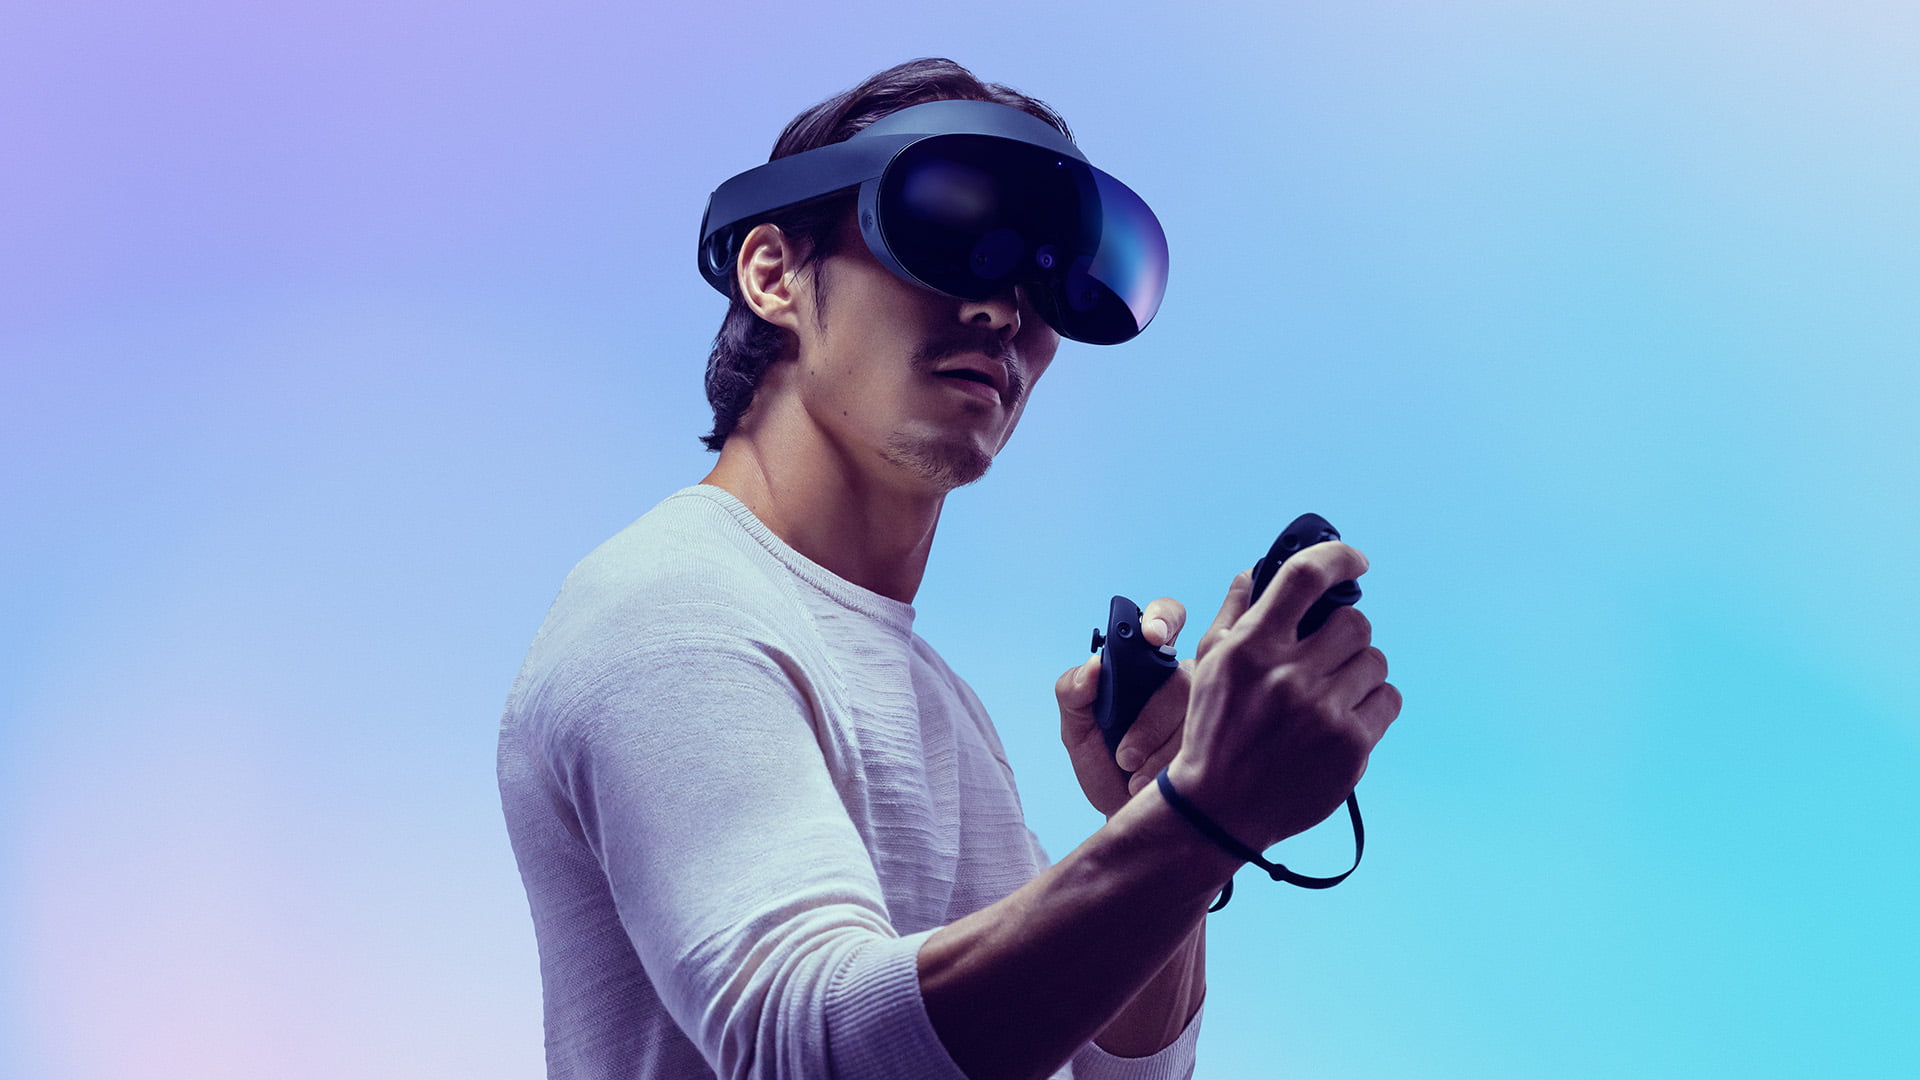 Meta Quest Pro visore per lavorare in VR e AR